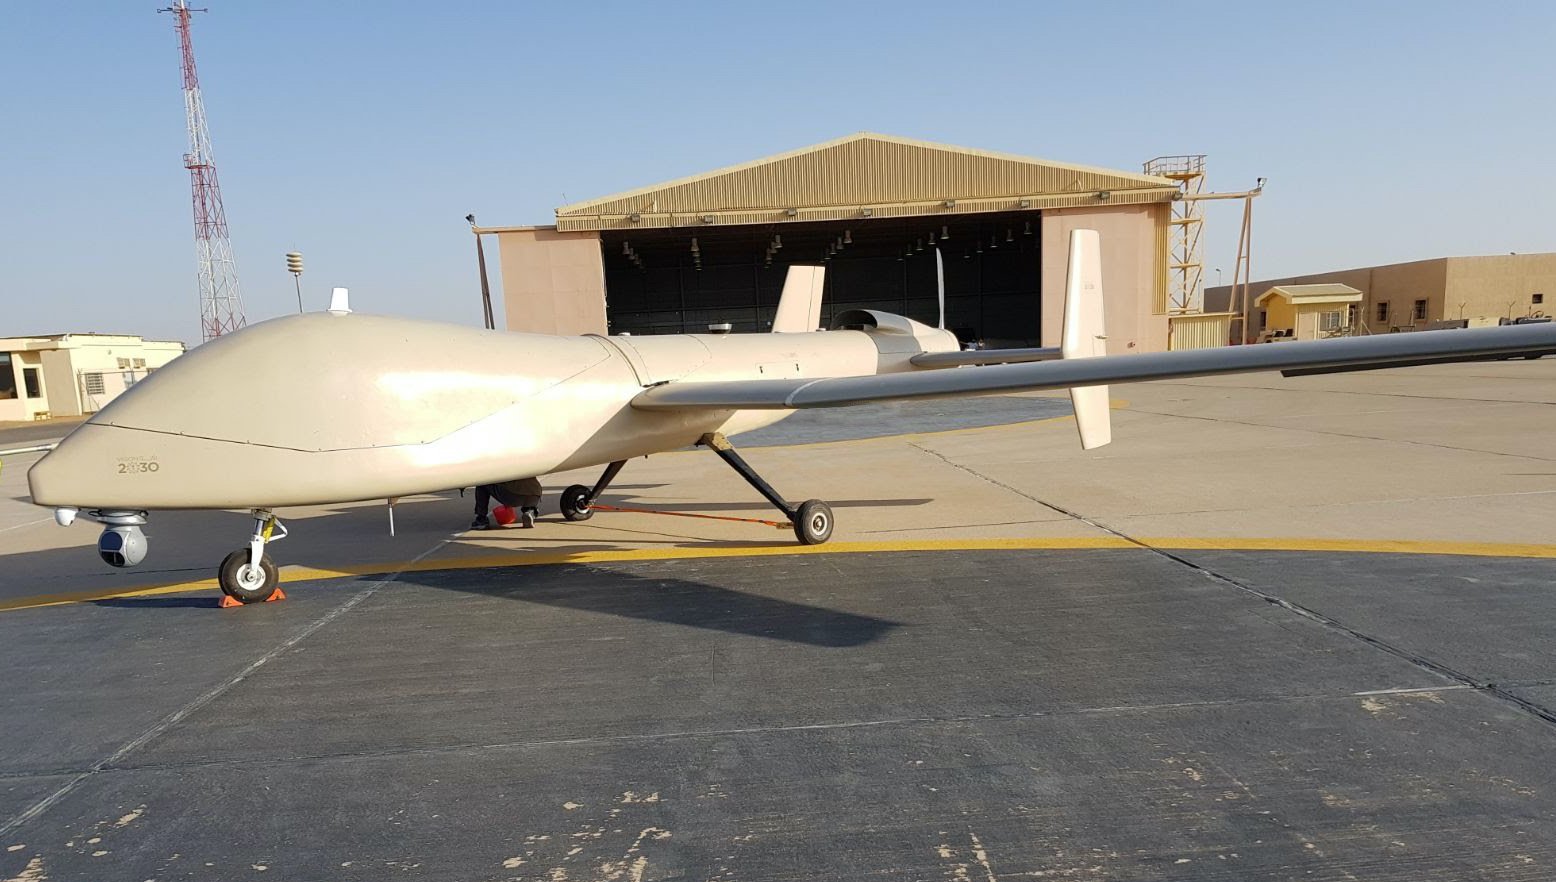 خبر حصري - مدينة الملك عبد العزيز للعلوم والتكنولوجيا تطور طائرة Saker بالتعاون مع UAVOS